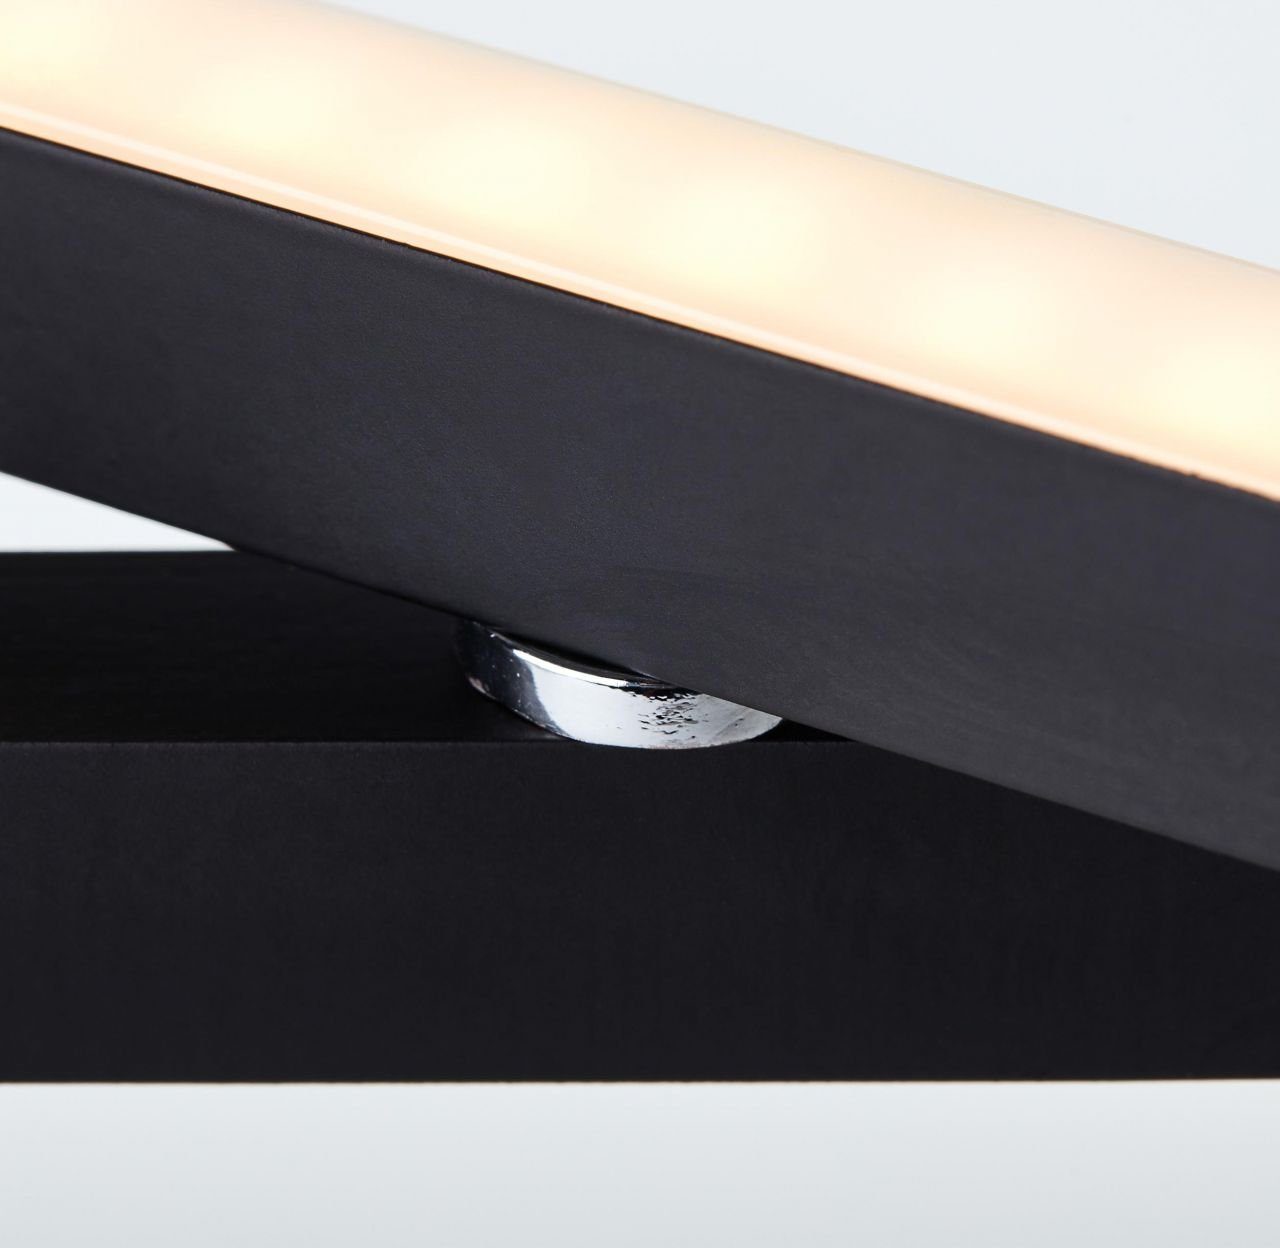 Brilliant Tischleuchte 2x Tischleuchte LED integriert, Ranut 3000K, LED schwarz, 9W LED Lampe, 2flg Ranut